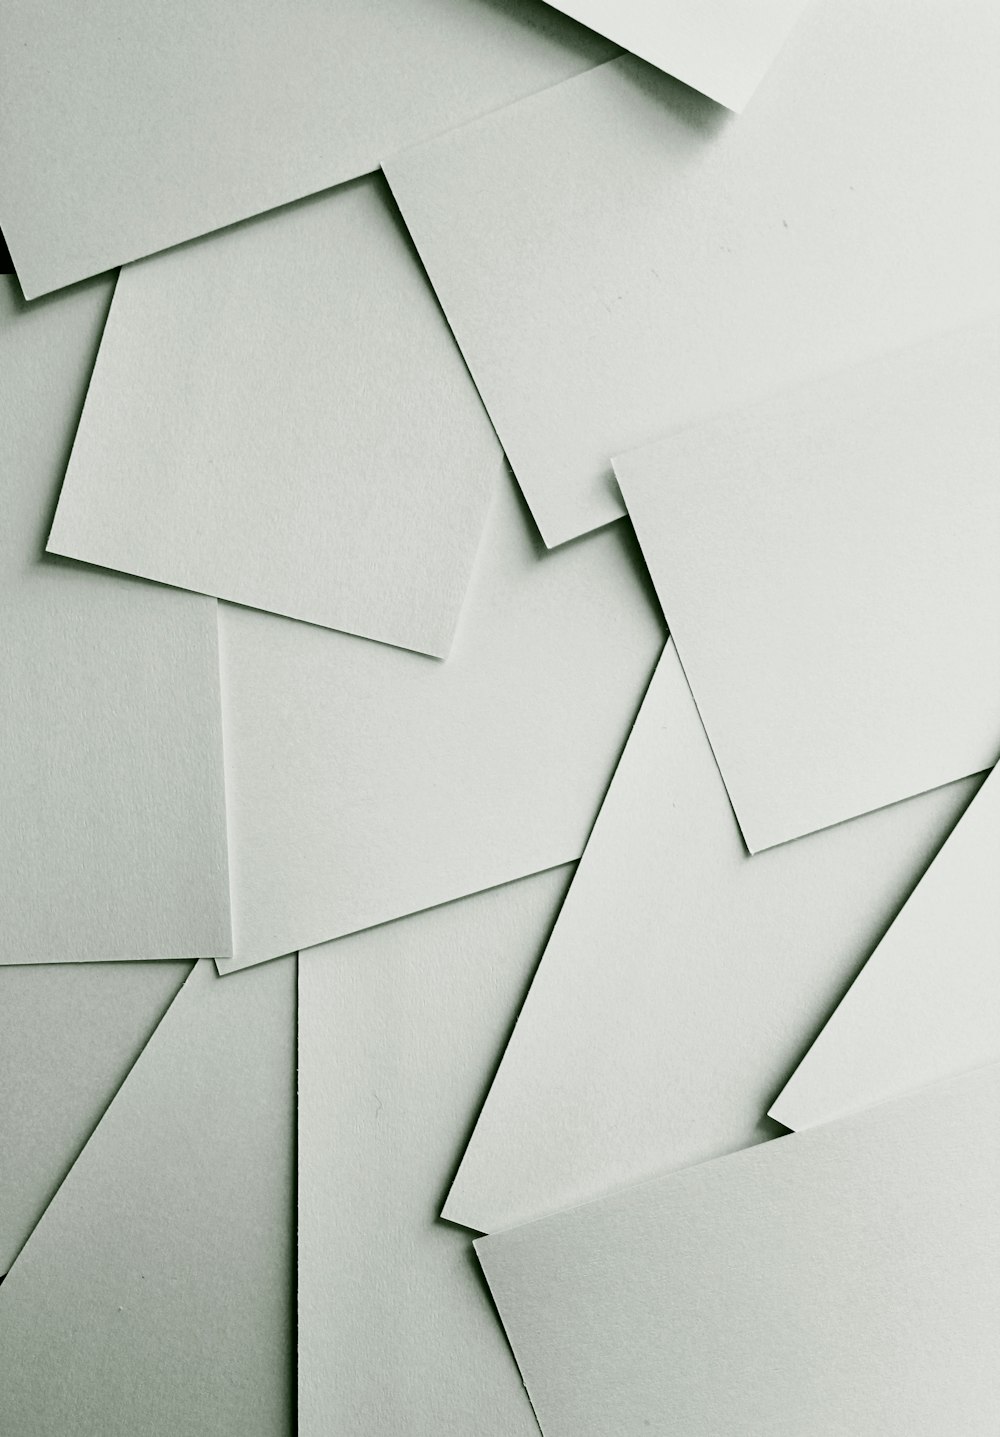 Hojas de papel blanco dispersas que cubren todo el marco